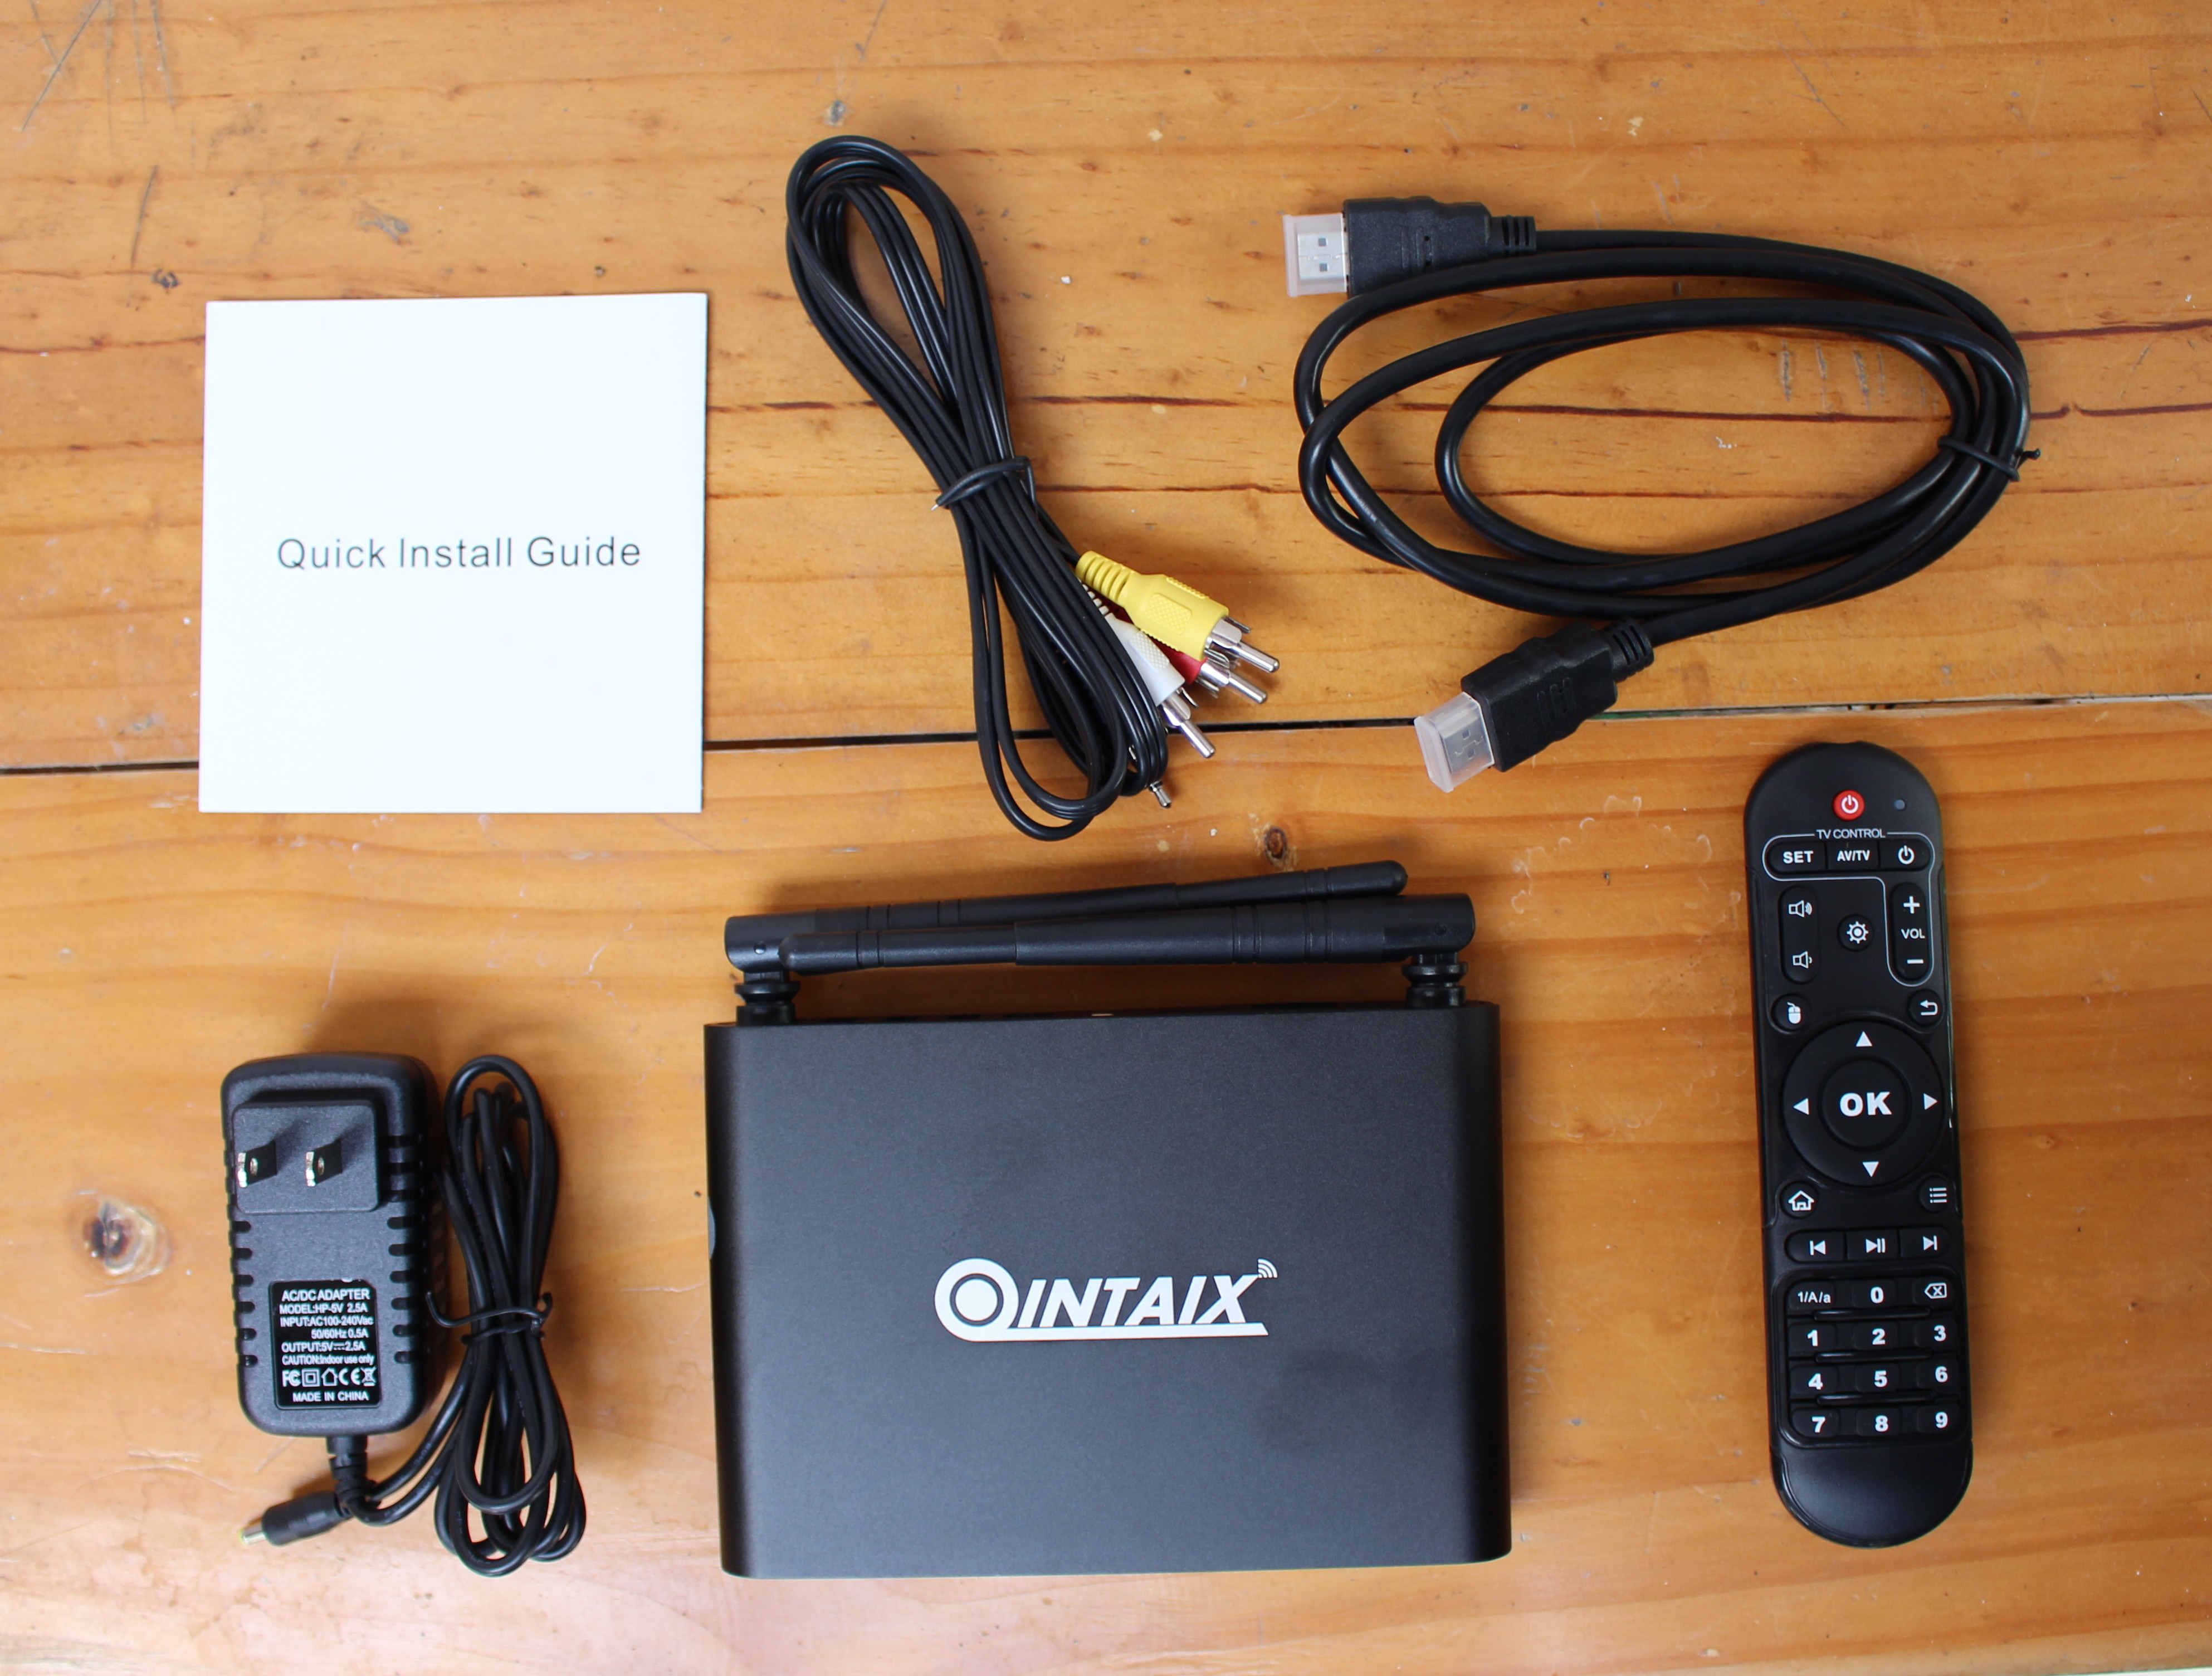 Qintaix Q912 Android mini PC Review – Par